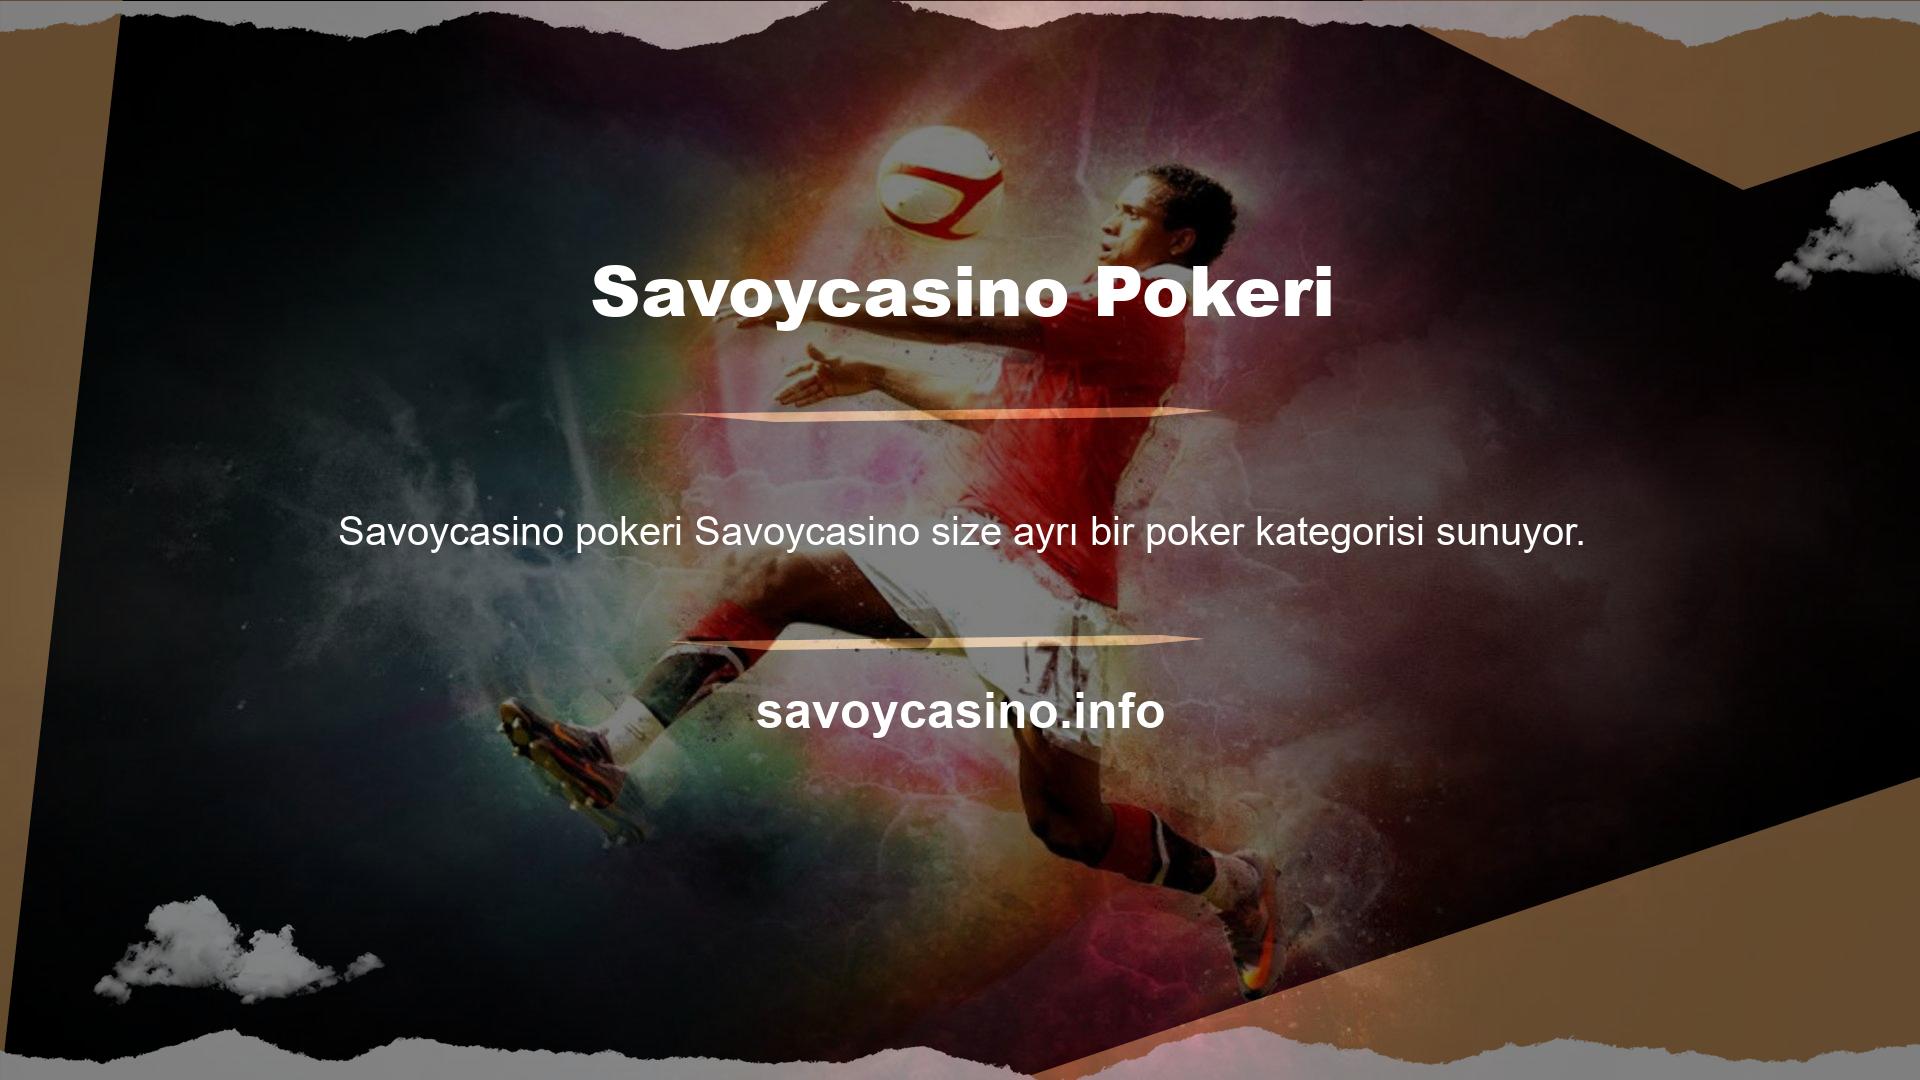 Savoycasino Pokerin canlı poker bölümü Texas Hold'em, Omaha, Turkey ve Craps oyunlarını içermektedir